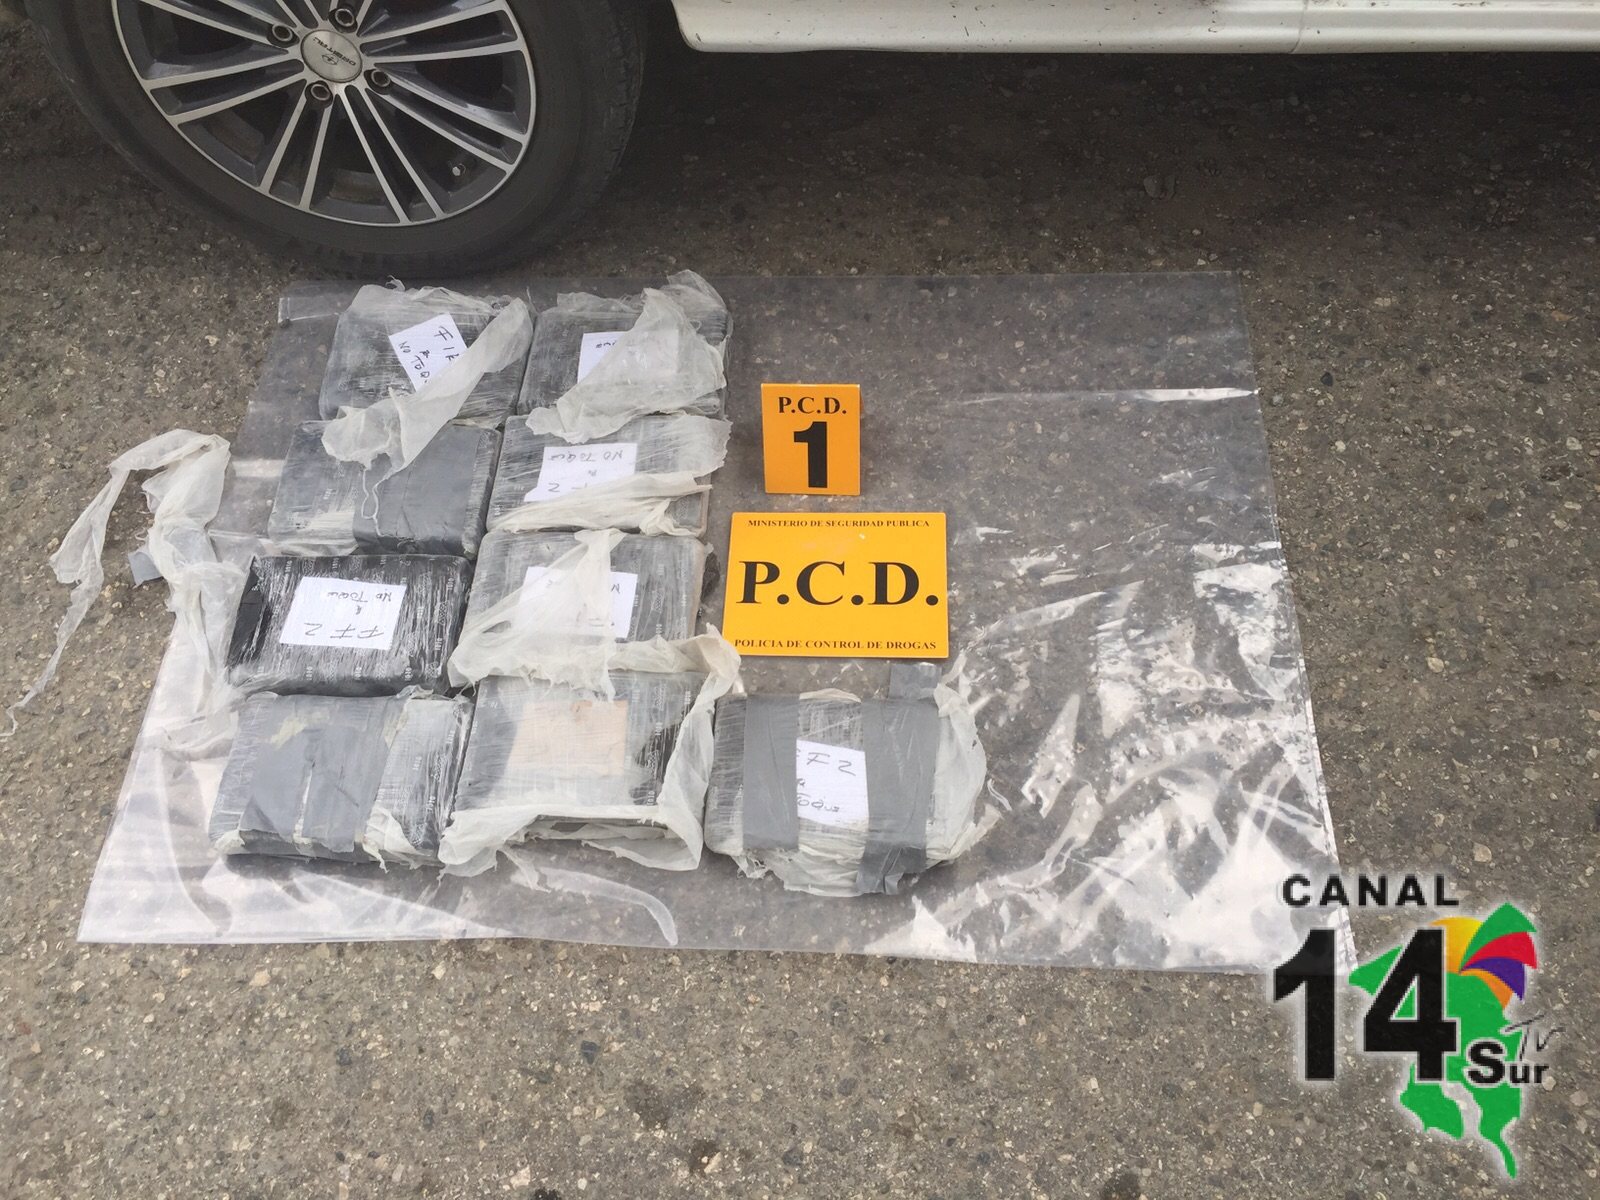 La Policía de Control de Drogas hizo un importante decomiso de cocaína en Golfito